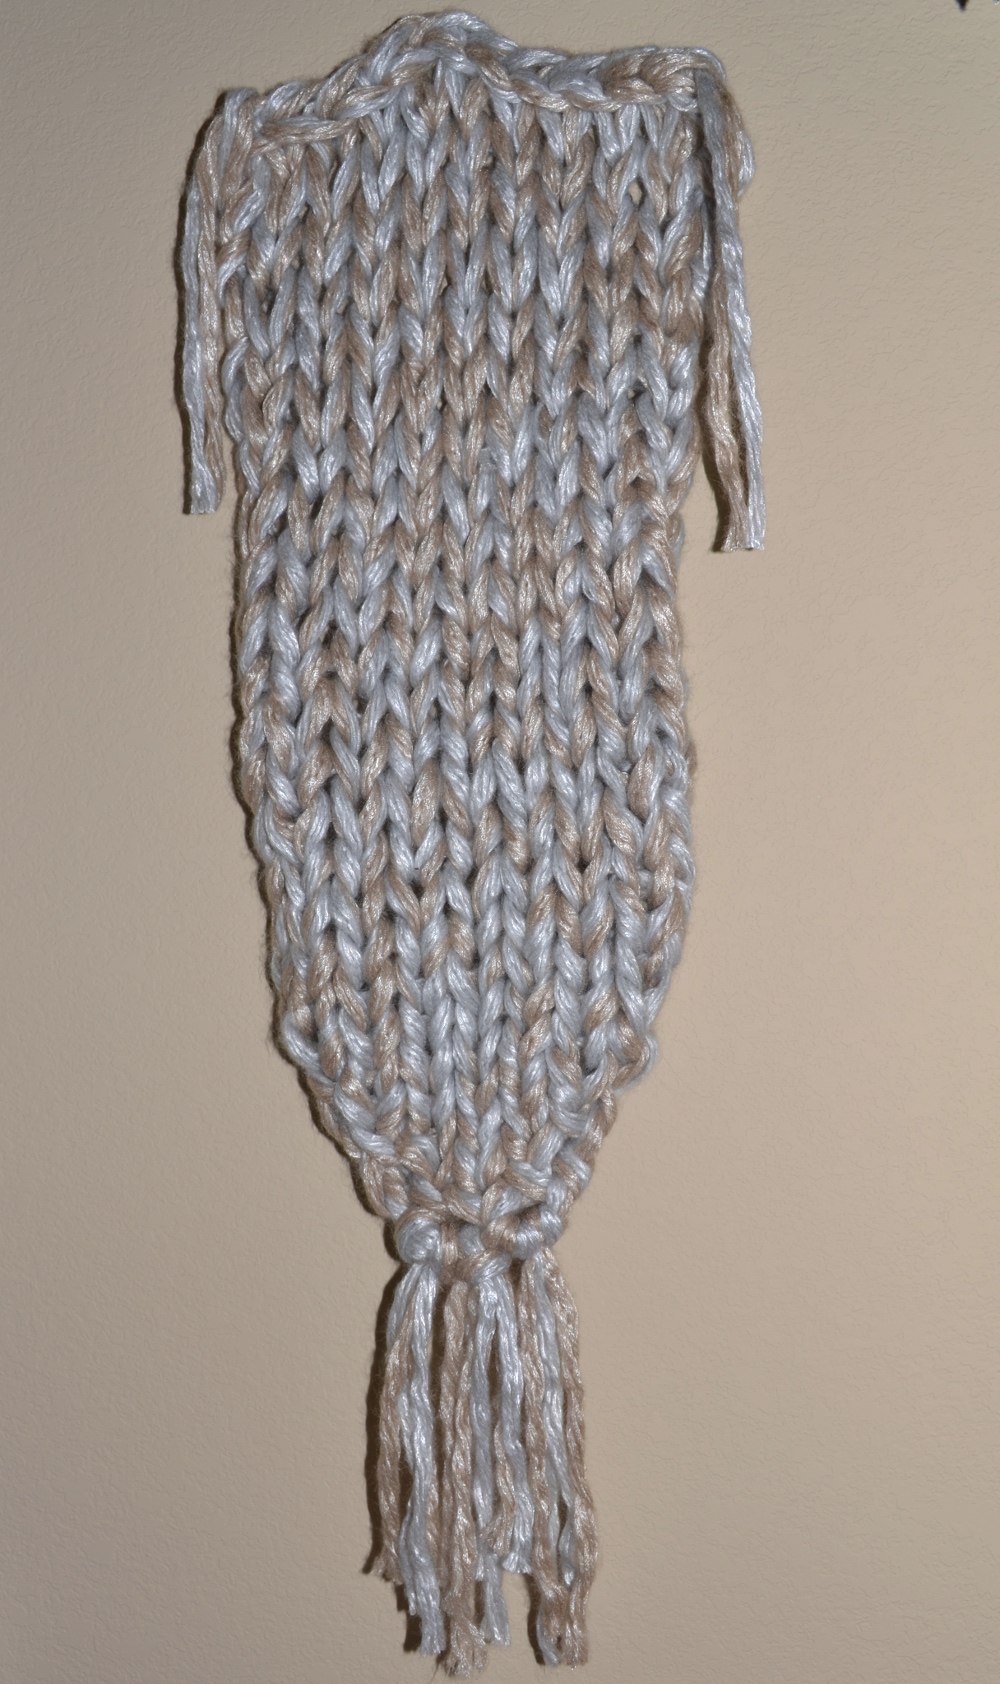 knit wall hanging diy